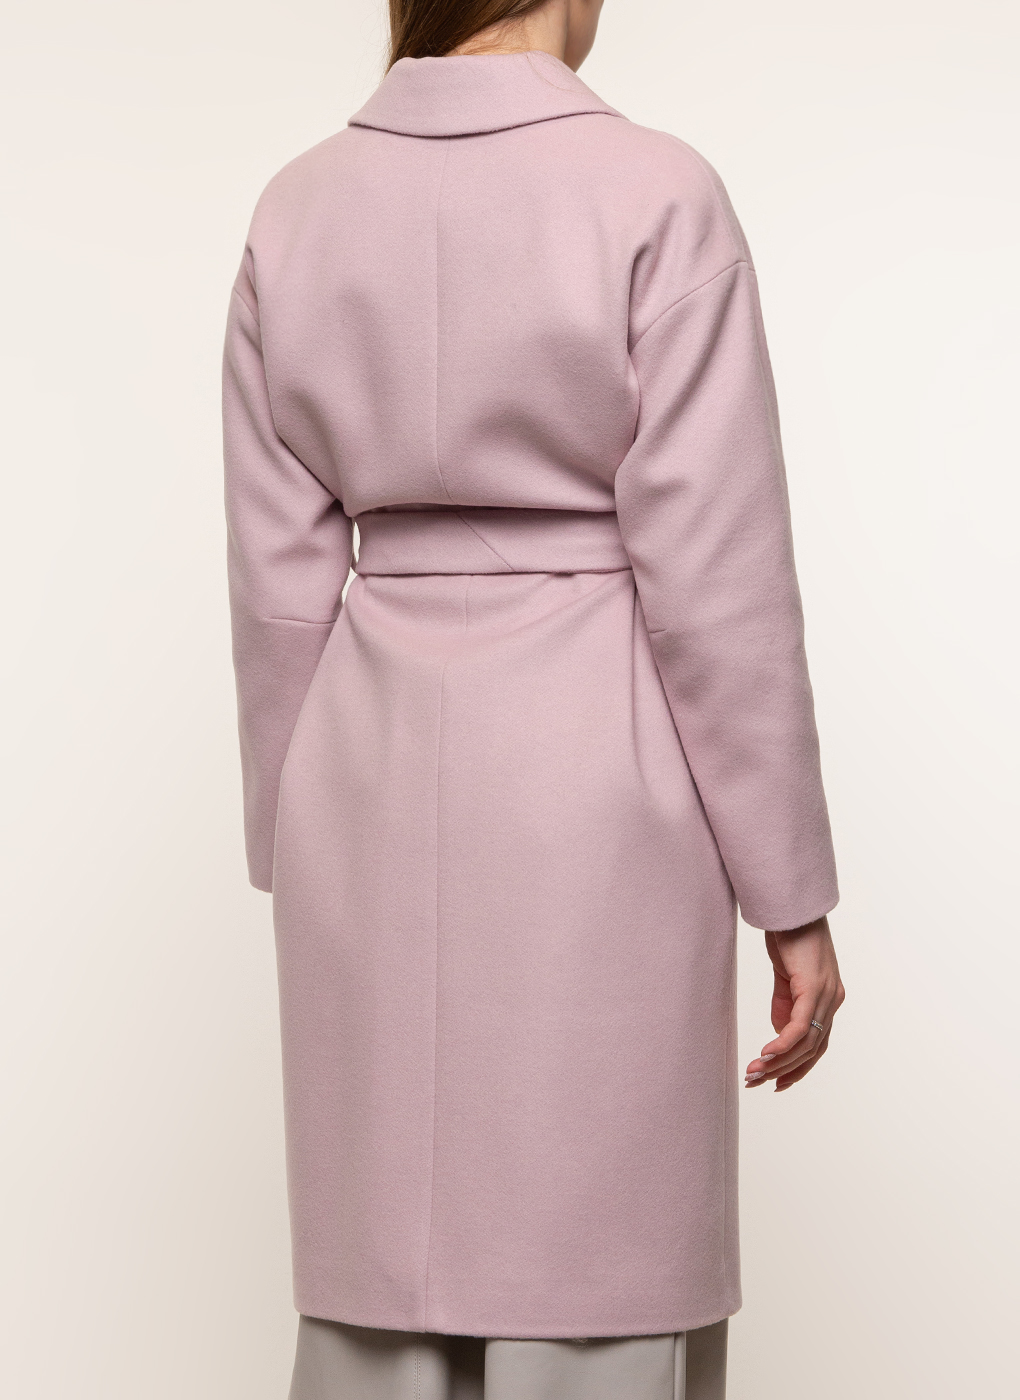 Пальто женское idekka 45536 розовое 42 RU